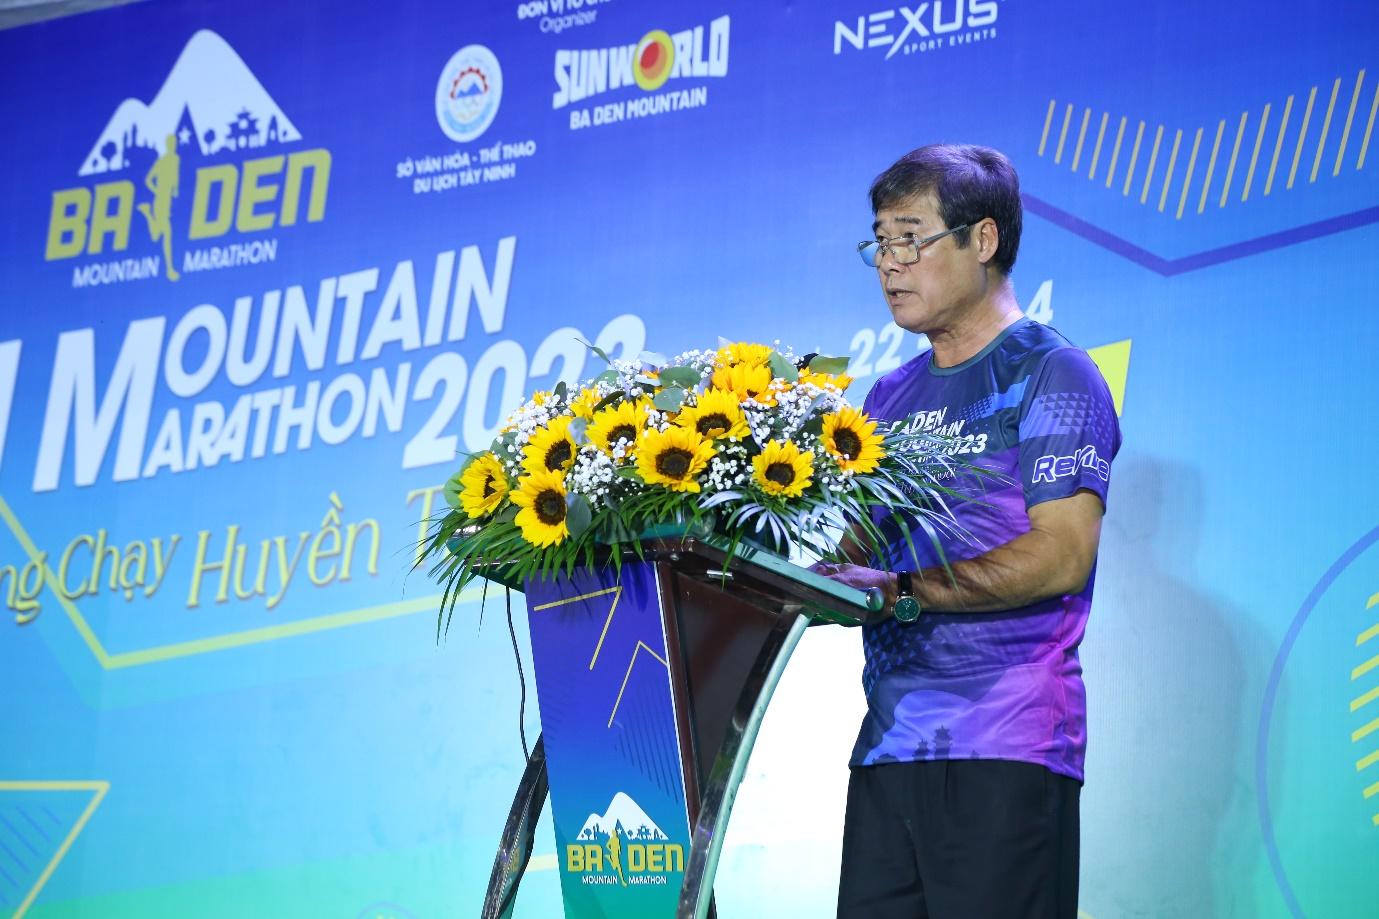 Giải chạy marathon lớn bậc nhất Nam bộ chính thức diễn ra tại Tây Ninh - Ảnh 2.